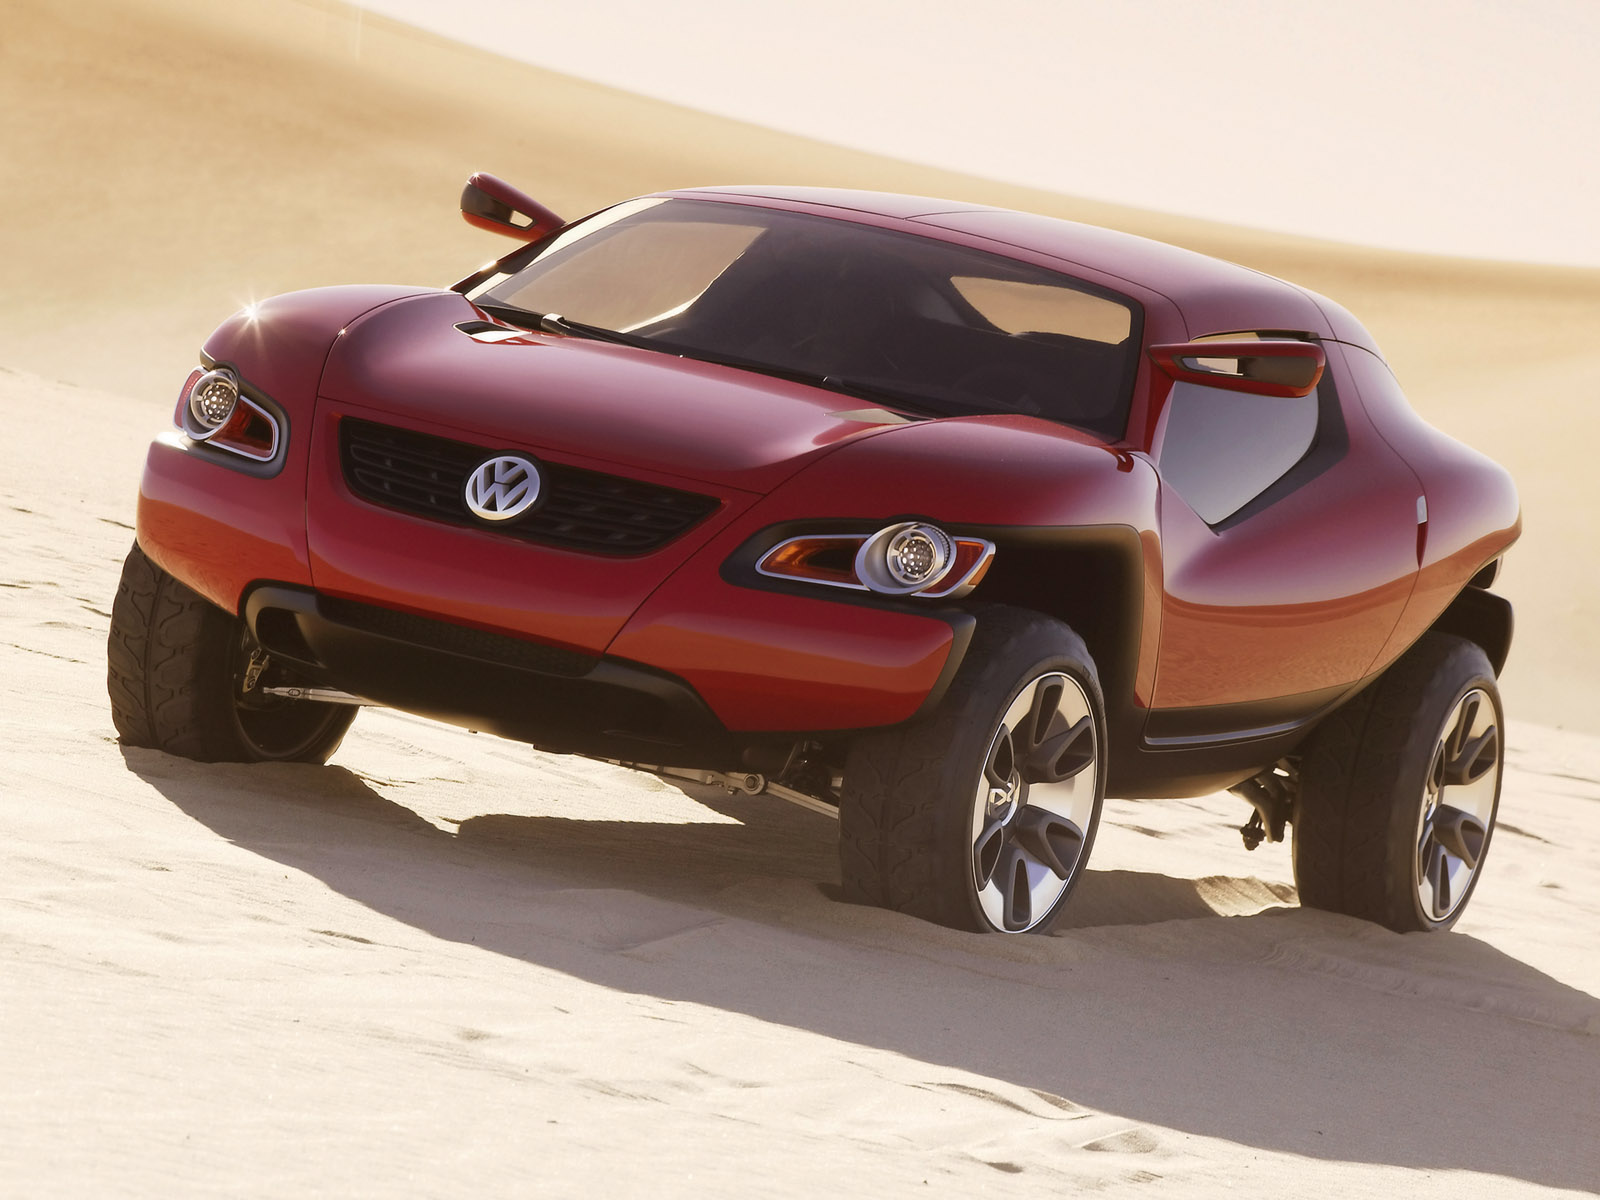 Volkswagen Concept Backgrounds on Wallpapers Vista